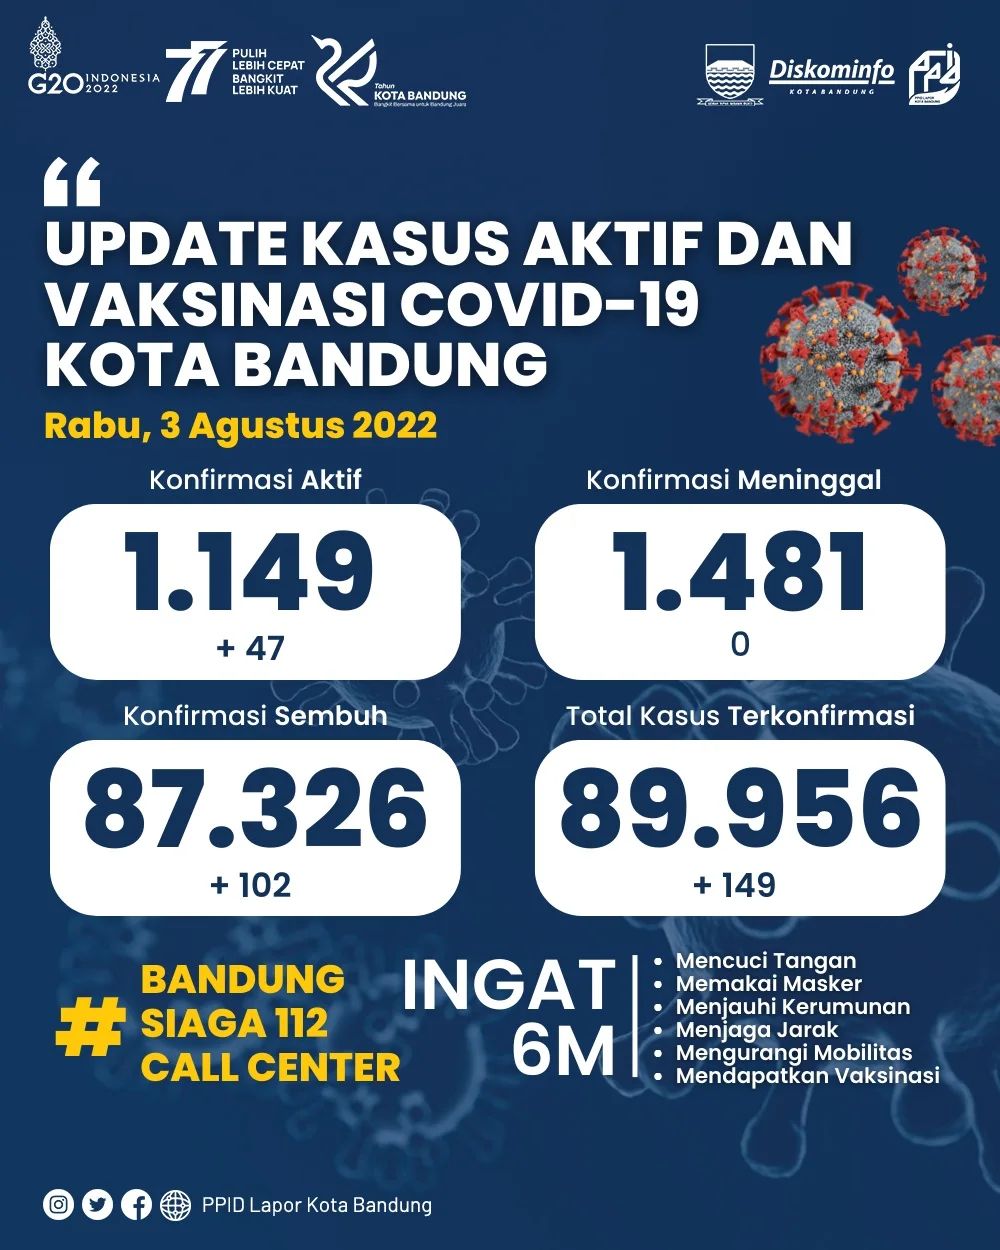 UPDATE STATISTIK COVID-19 DI KOTA BANDUNG PER TANGGAL 3 AGUSTUS 2022